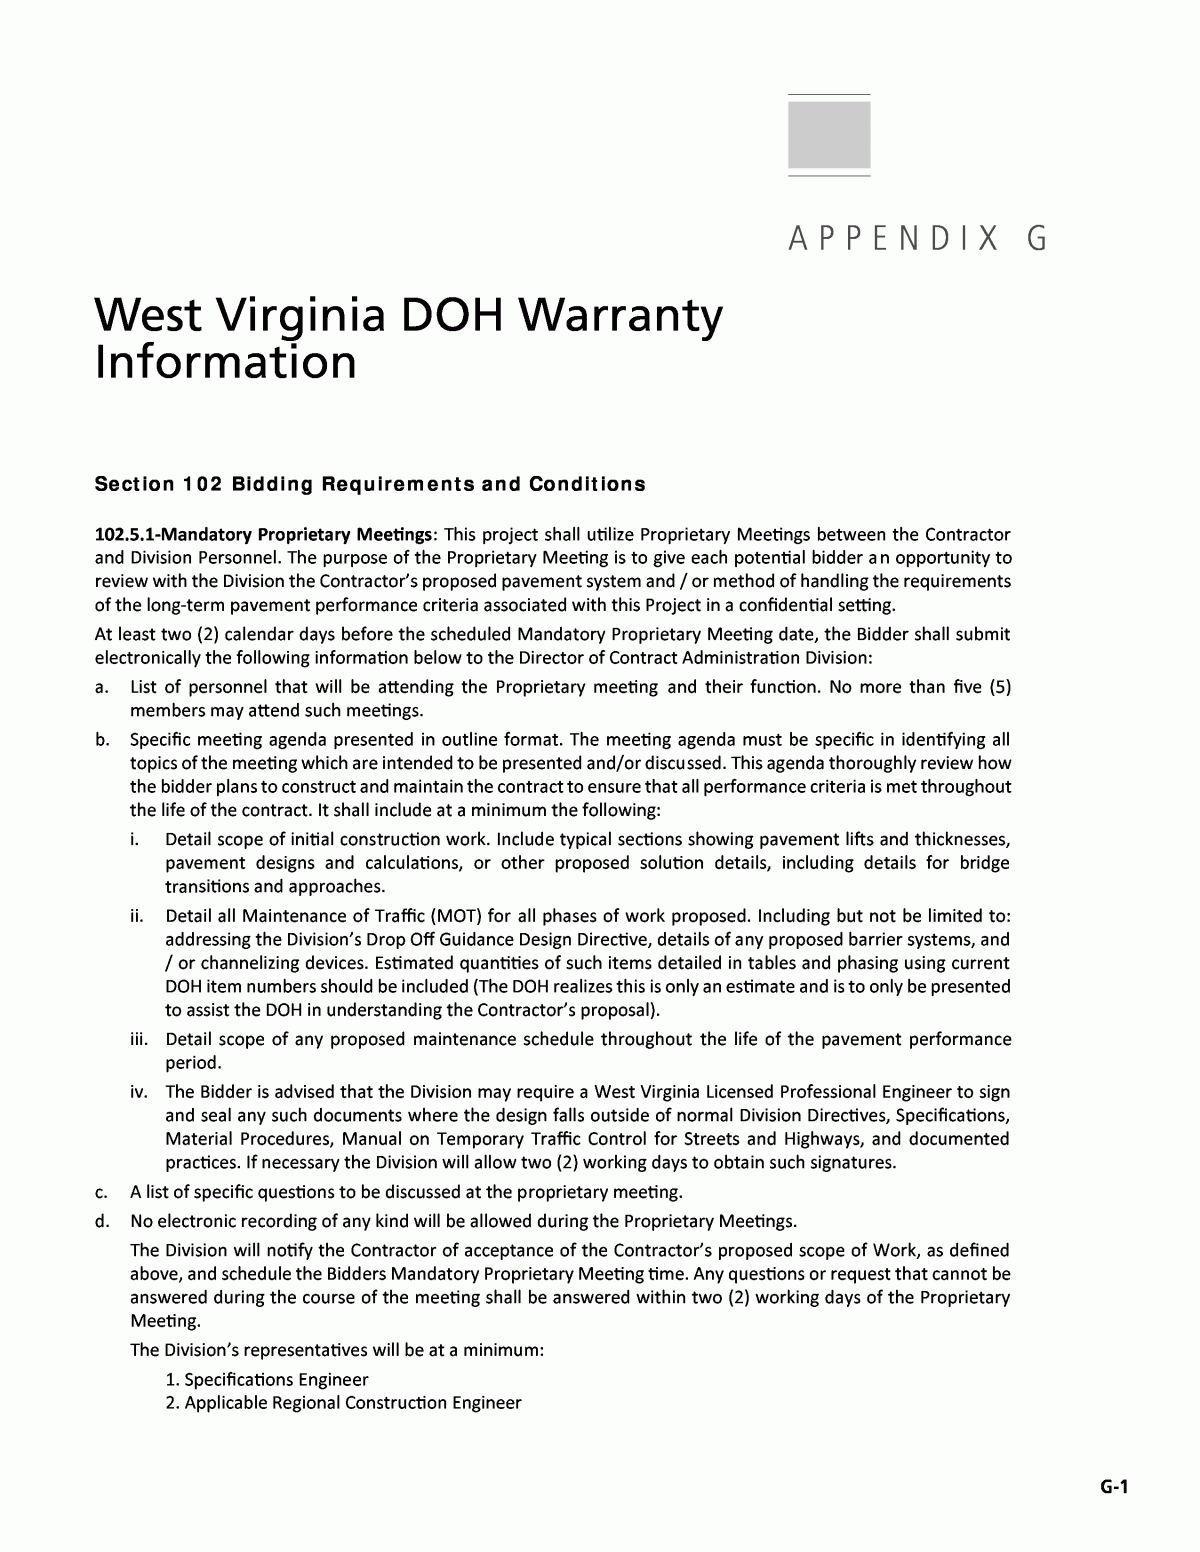 Appendix G - West Virginia Doh Warranty Information